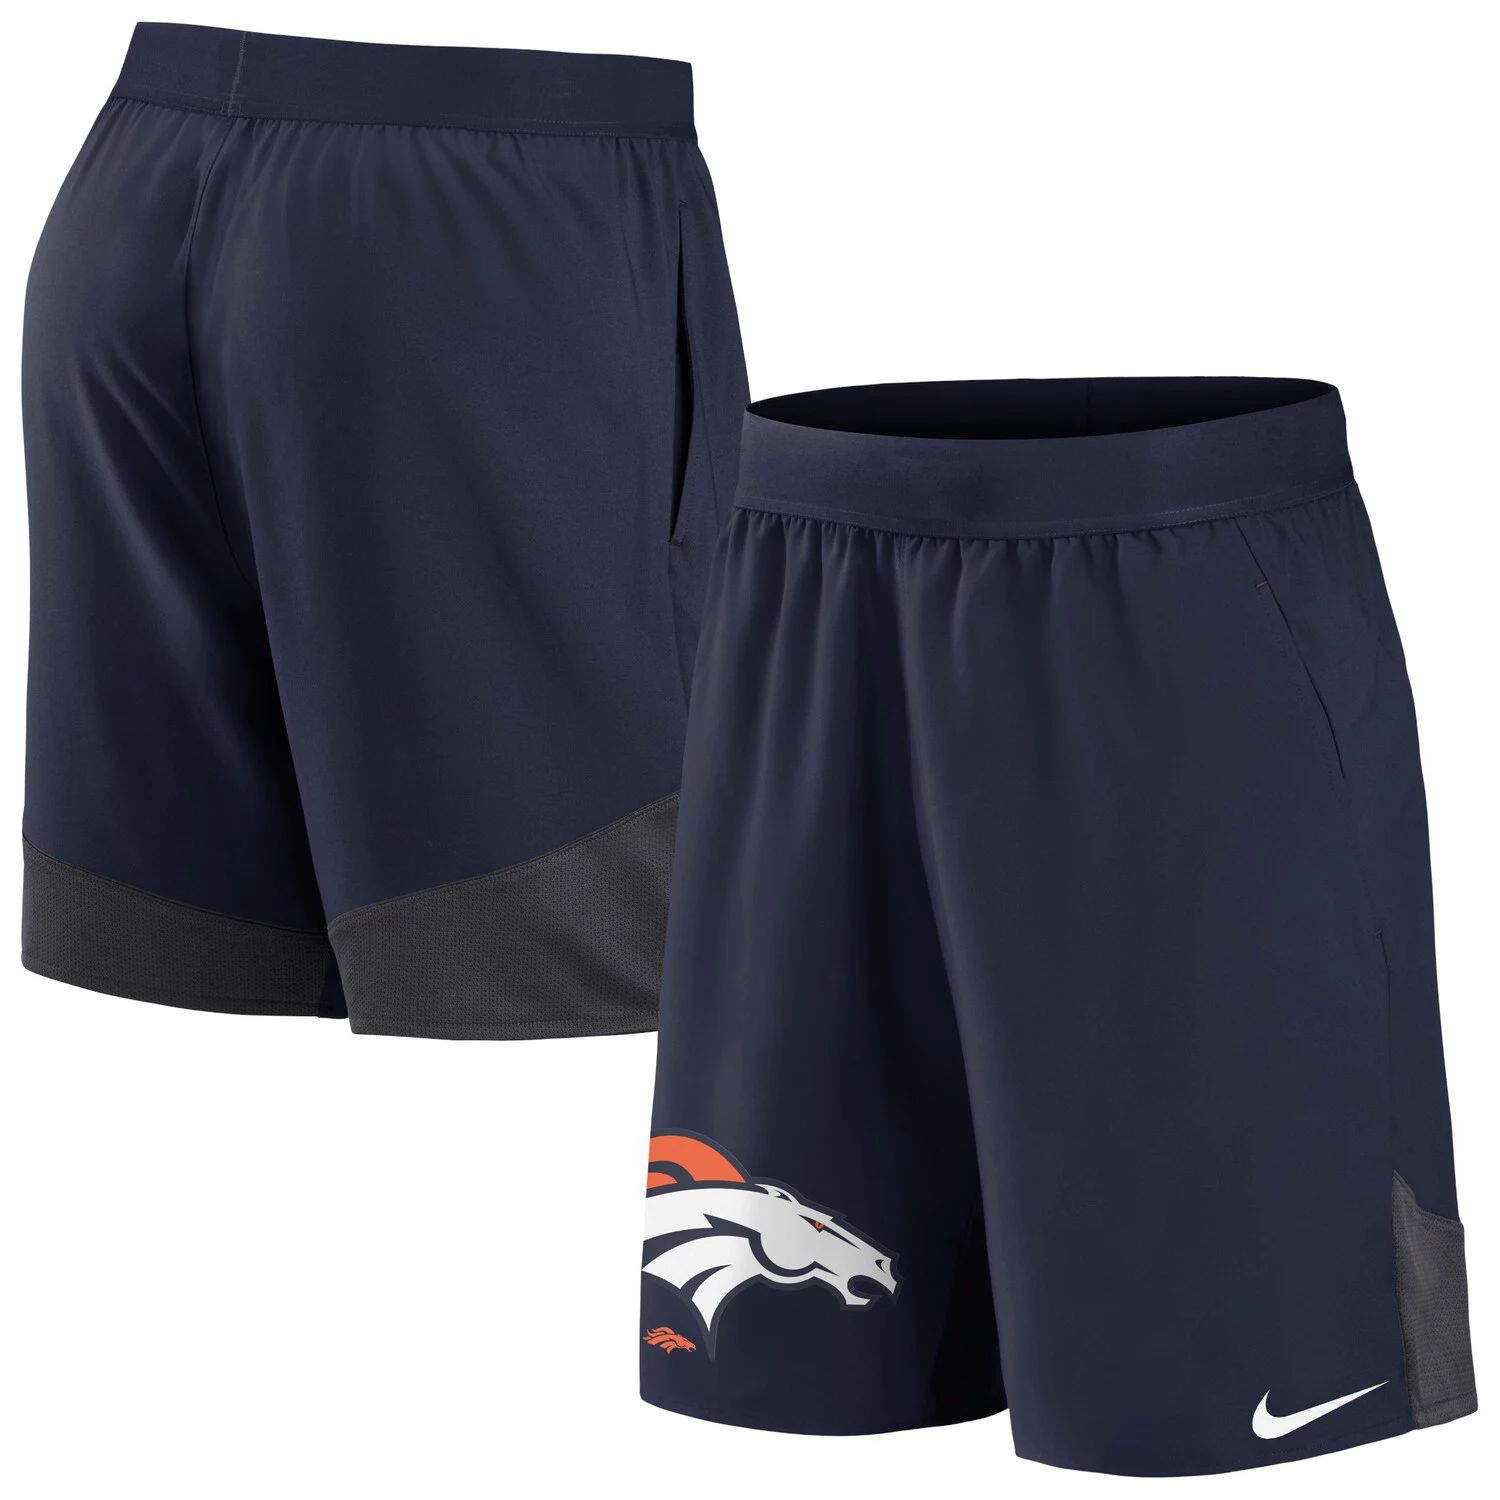 Мужские темно-синие эластичные шорты Denver Broncos Performance Nike